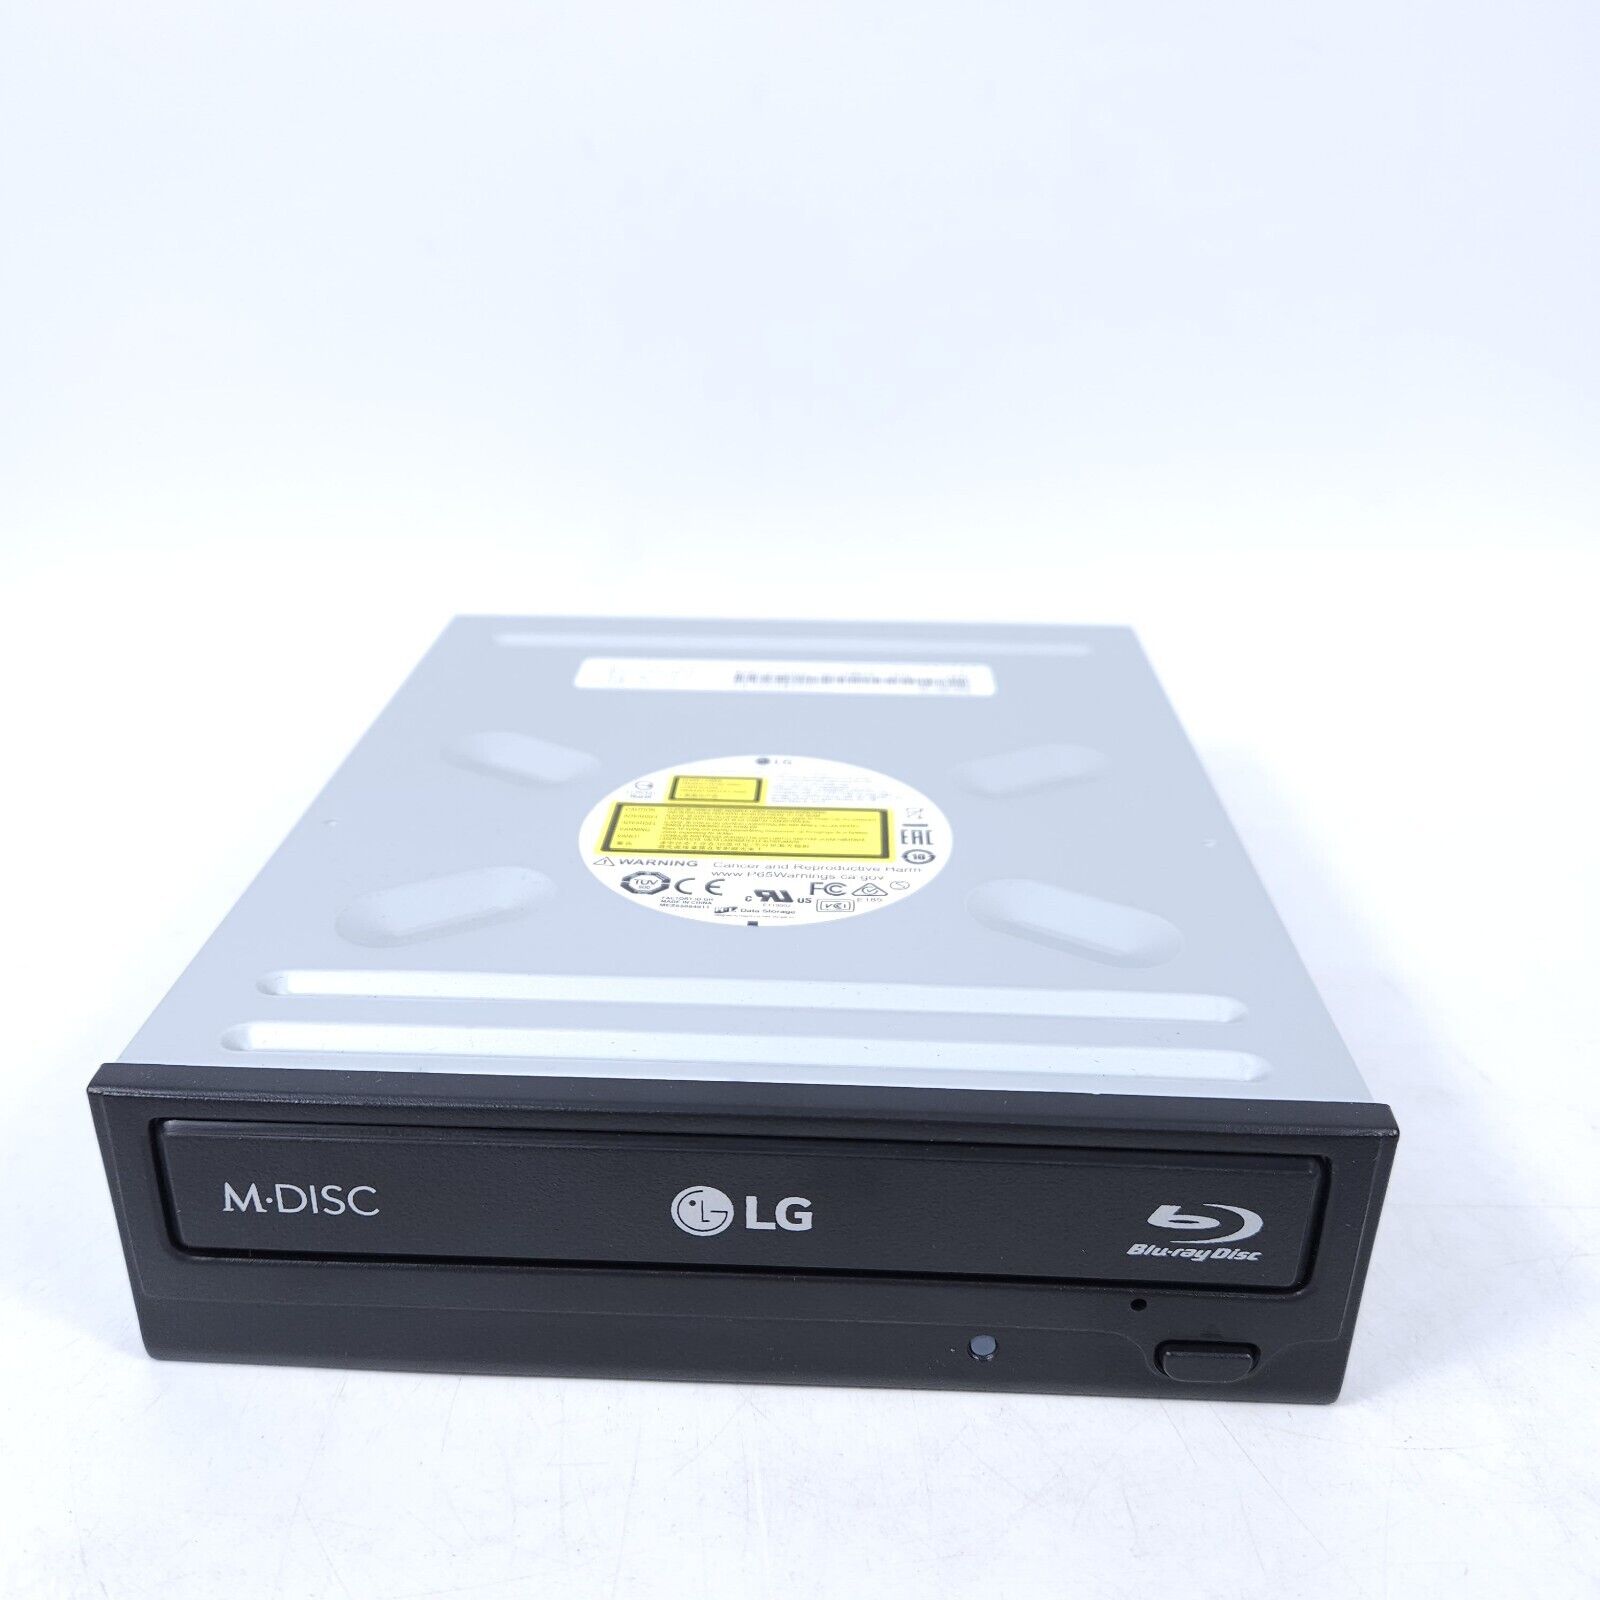  LG WH14NS40 1.02 4K UHD friendly Blu-ray drive. 14X speed